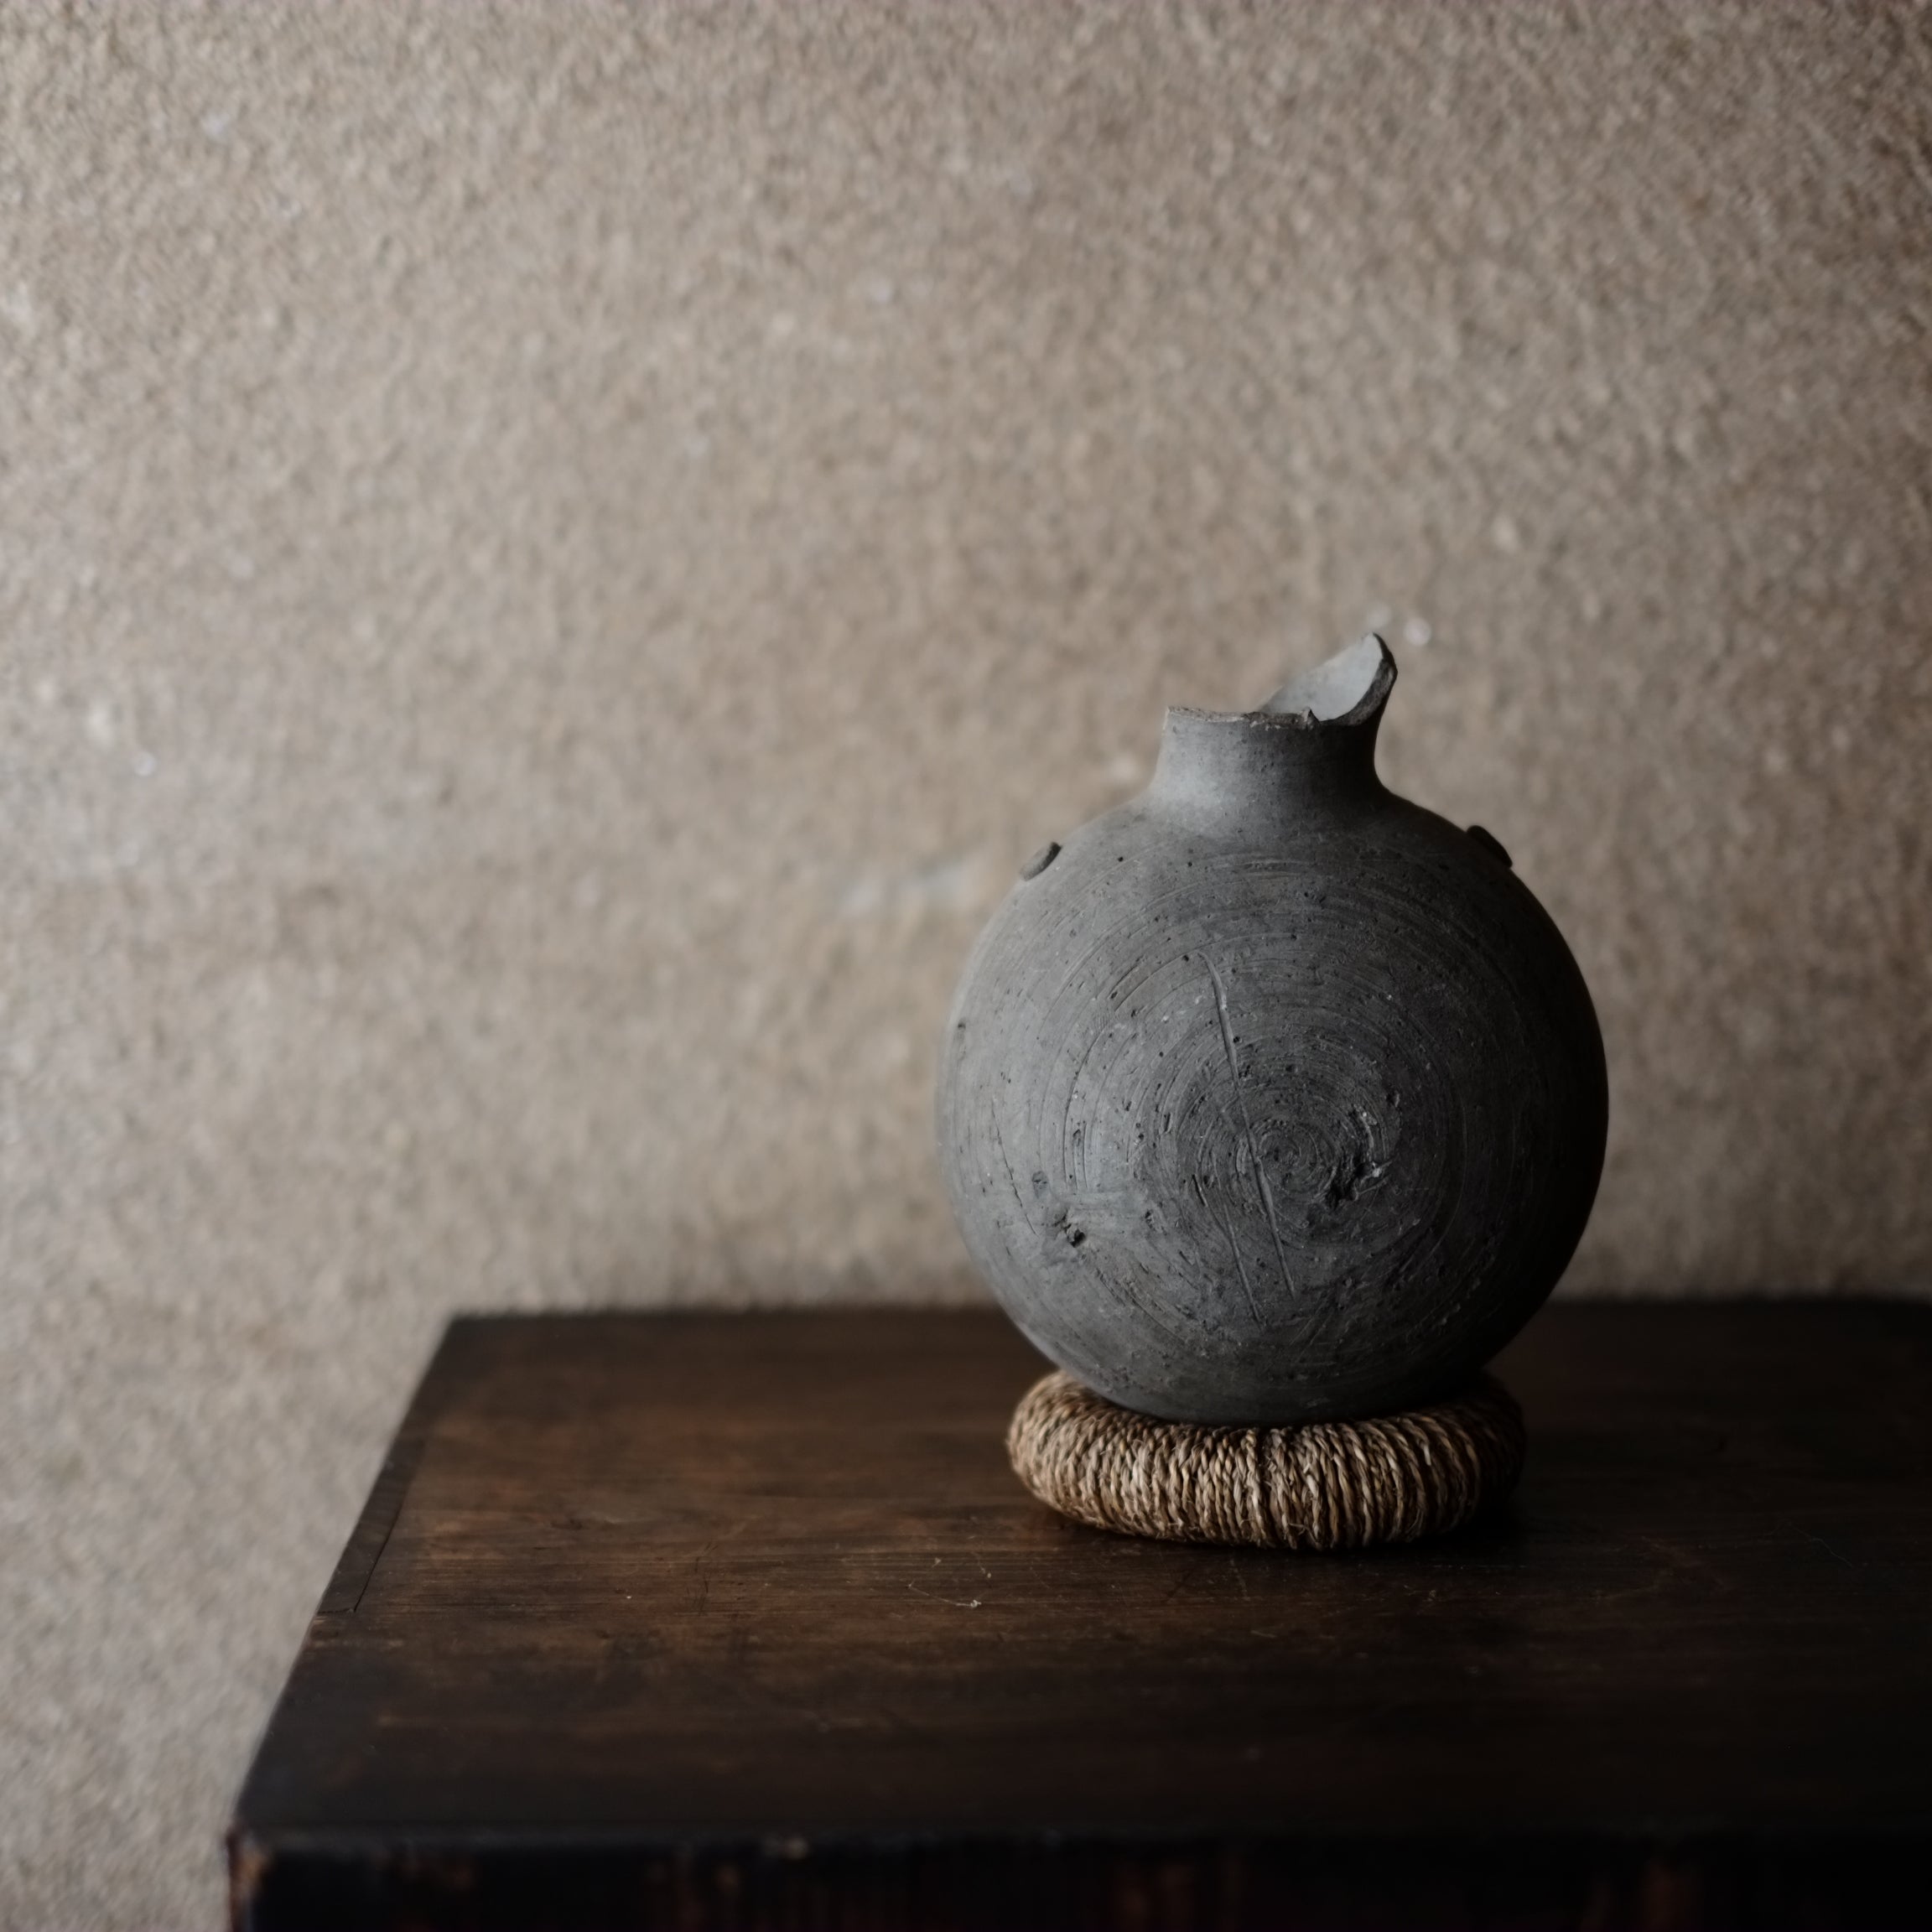 須恵器 提瓶 (6-7世紀頃) – 逢季荘